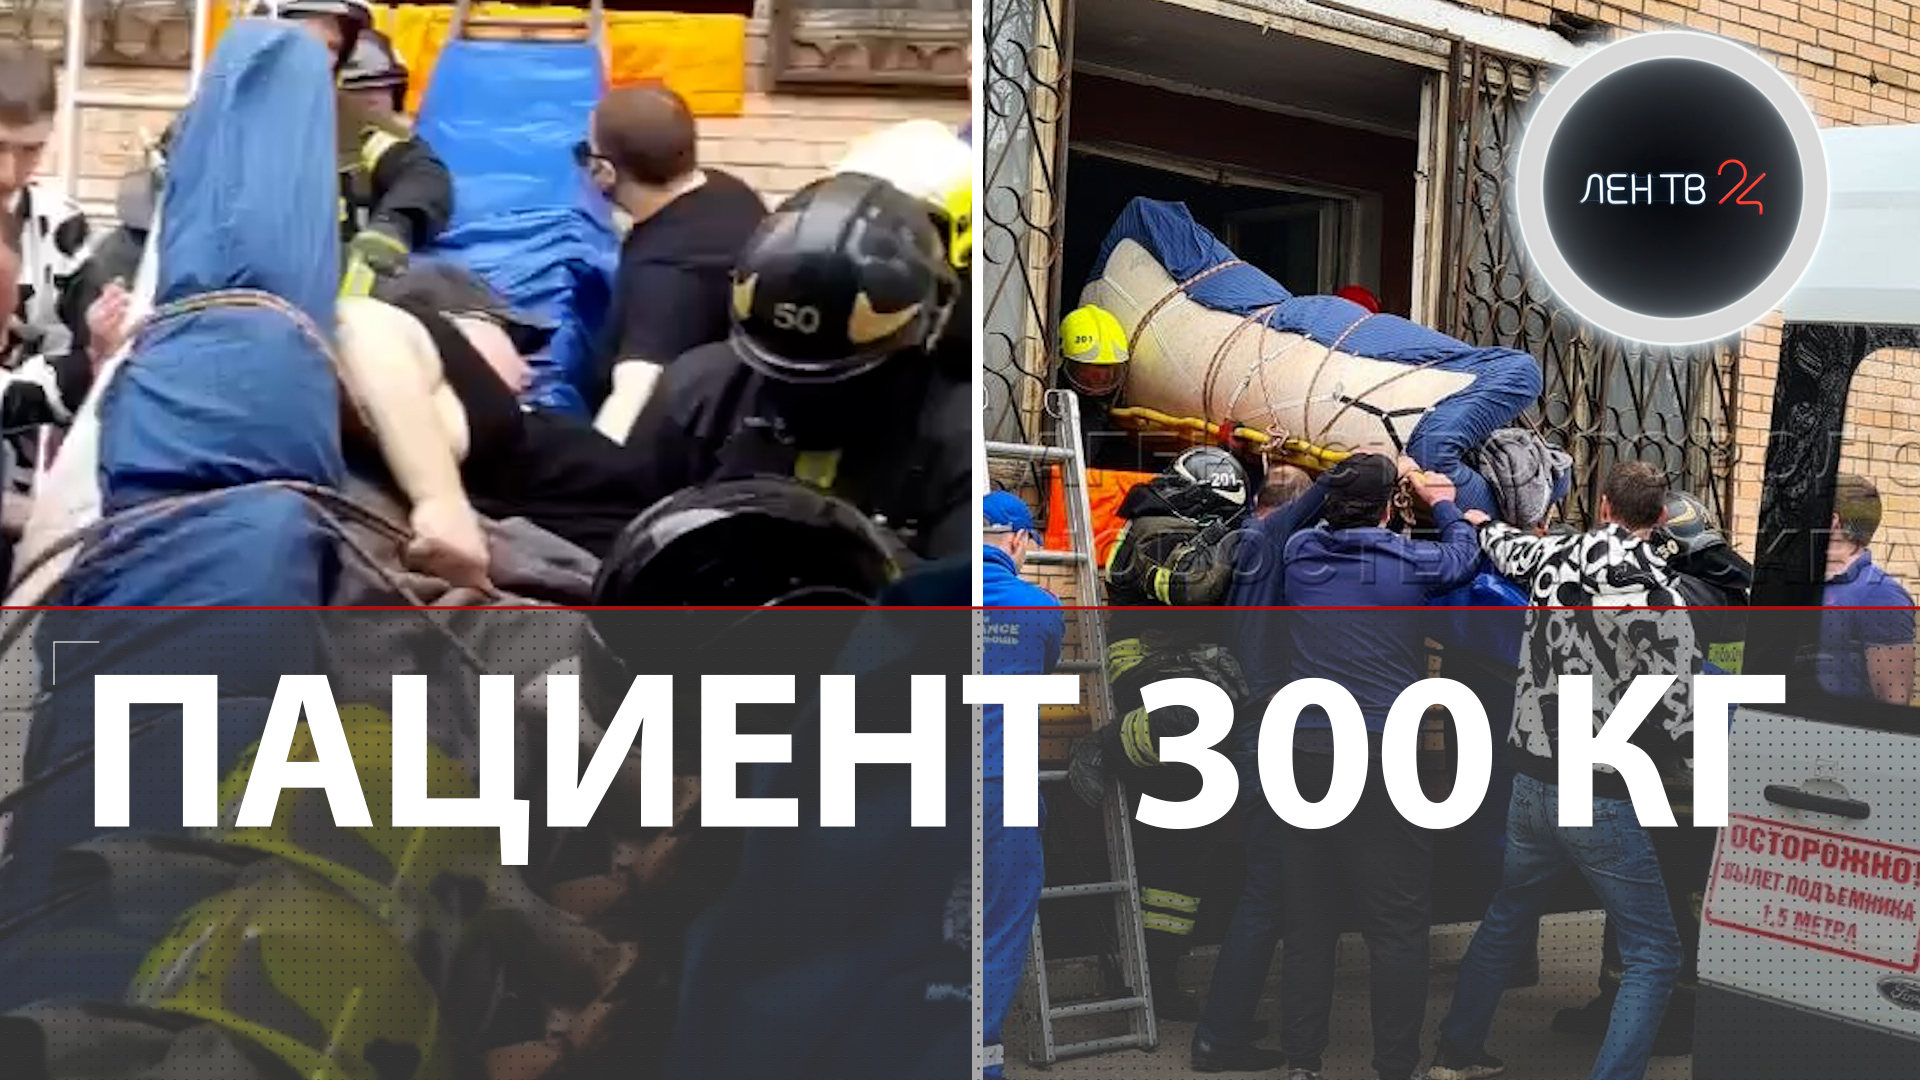 Пациента скорой весом 300 кг вытаскивали из квартиры 4 часа | Москвич 10 лет не выходил из дома